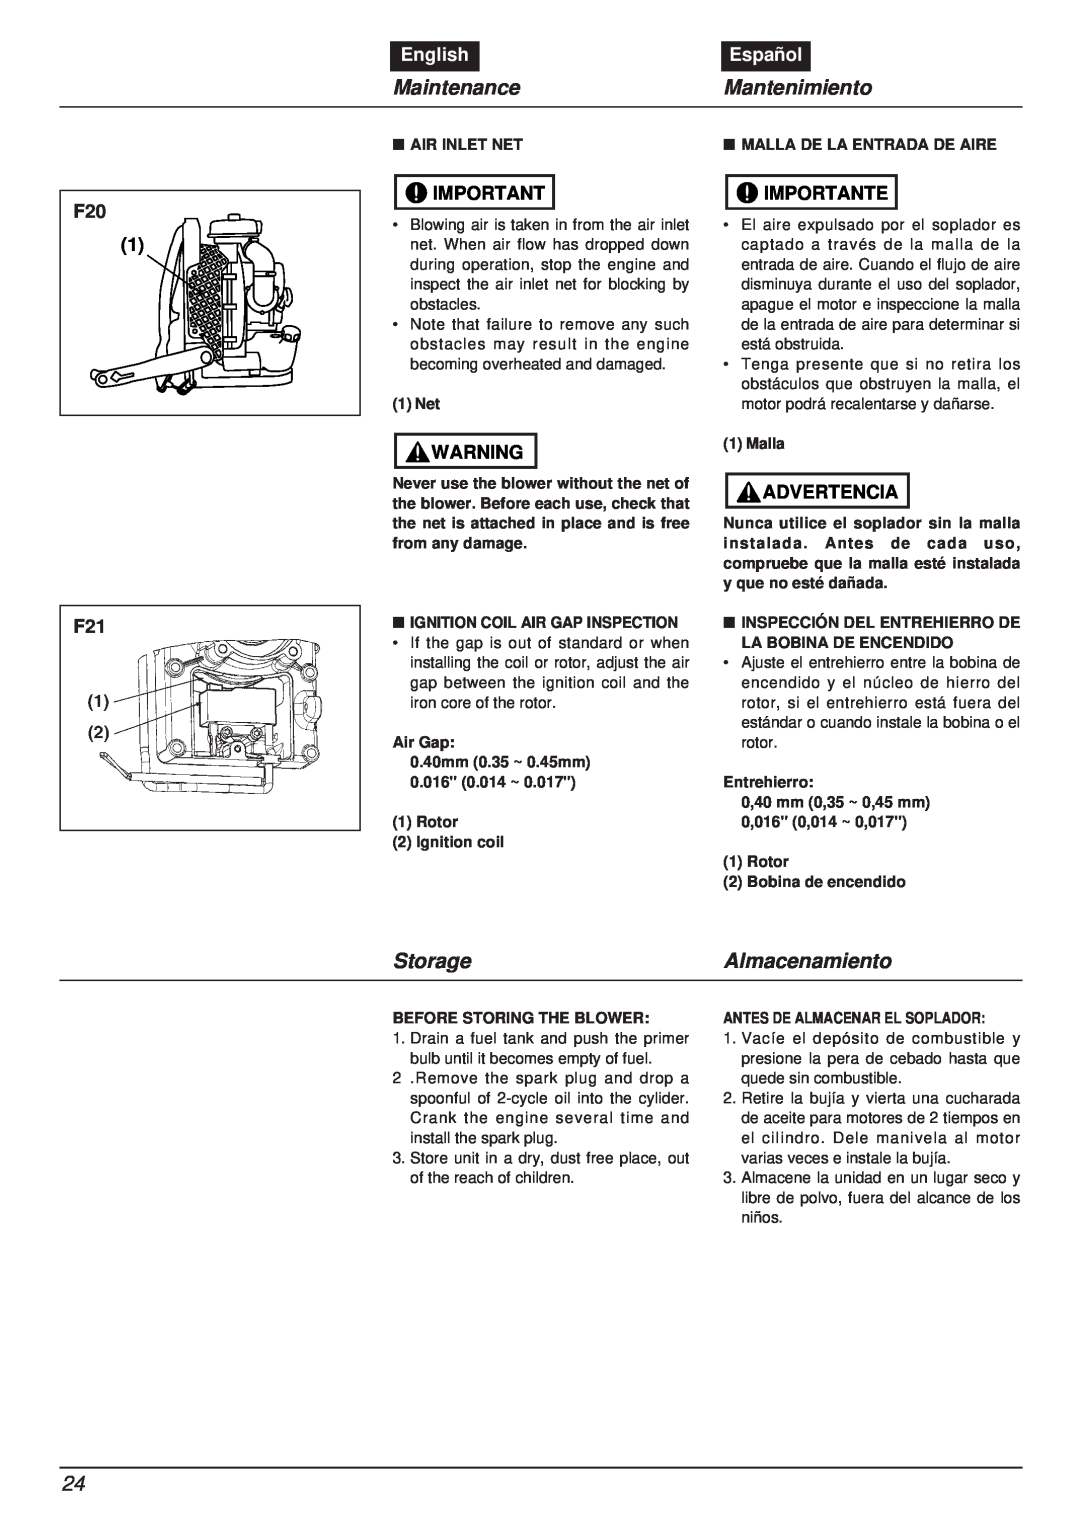 RedMax EBZ8000RH manual Maintenance, Mantenimiento, Storage, Almacenamiento, English, Español, Importante, Advertencia 